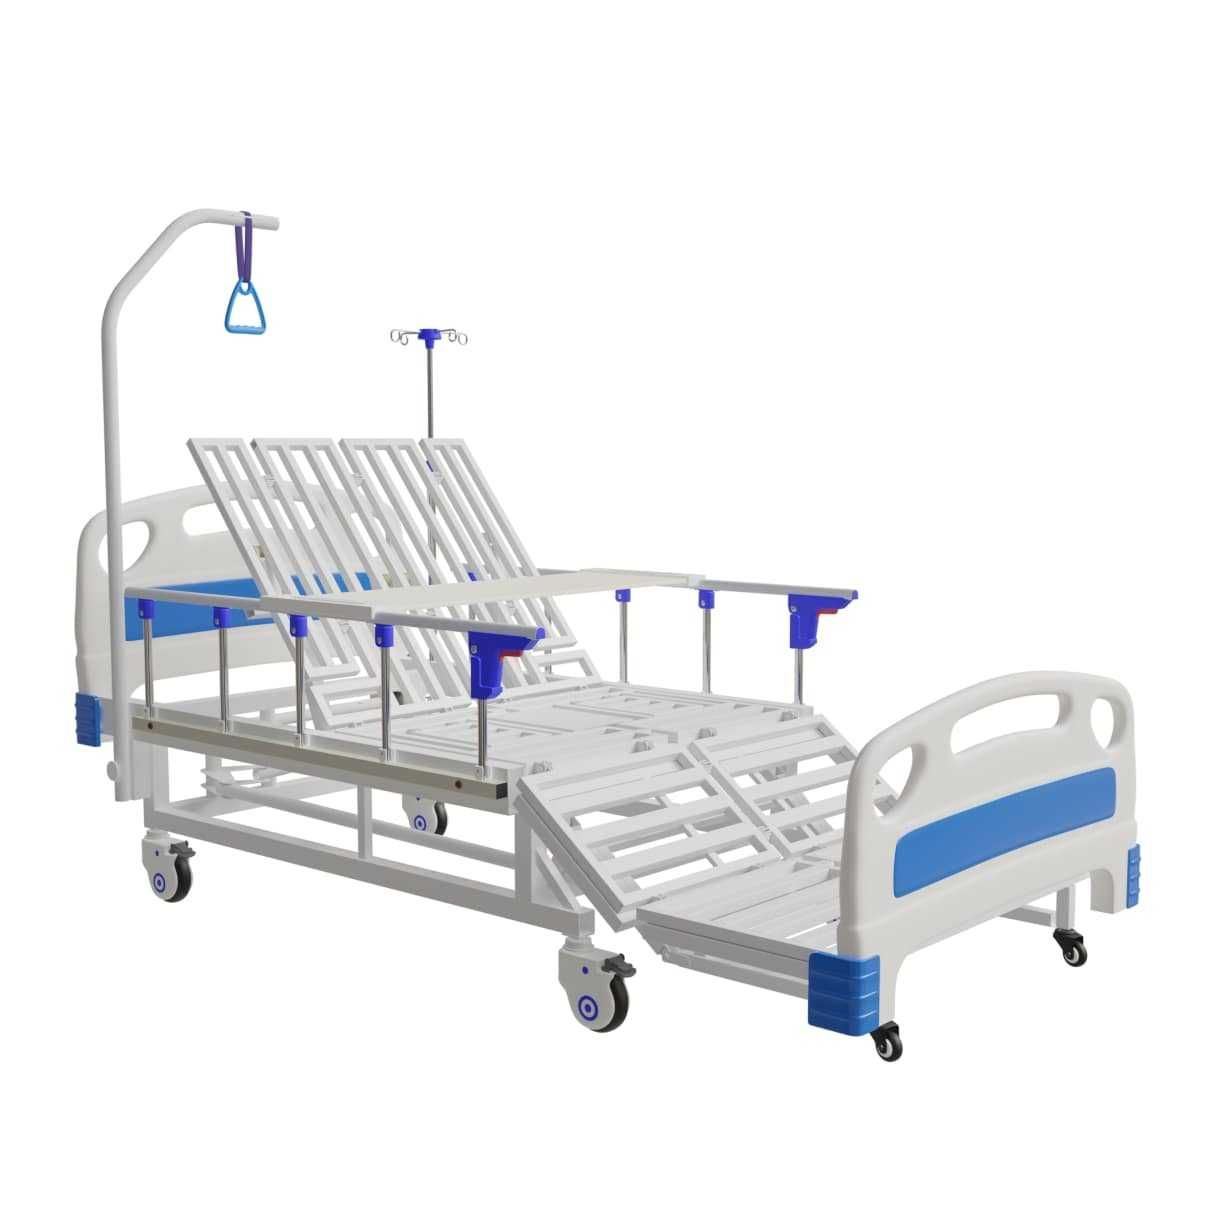 Механическая медицинская кровать для домашнего использования.